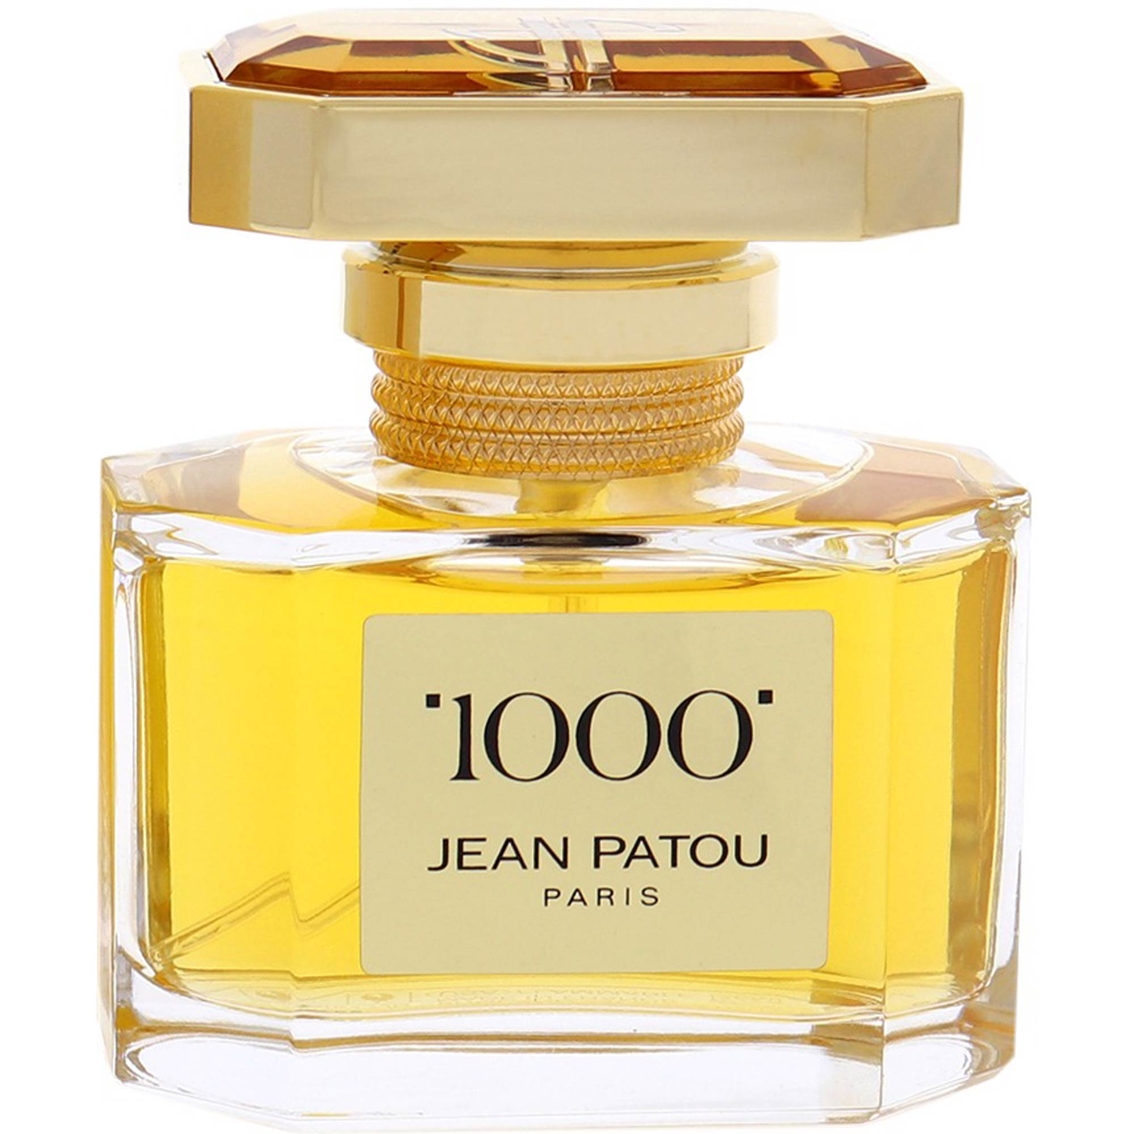 Jean Patou 1000 By Jean Patou For Women Eau De Toilette Spray 1 Oz ...